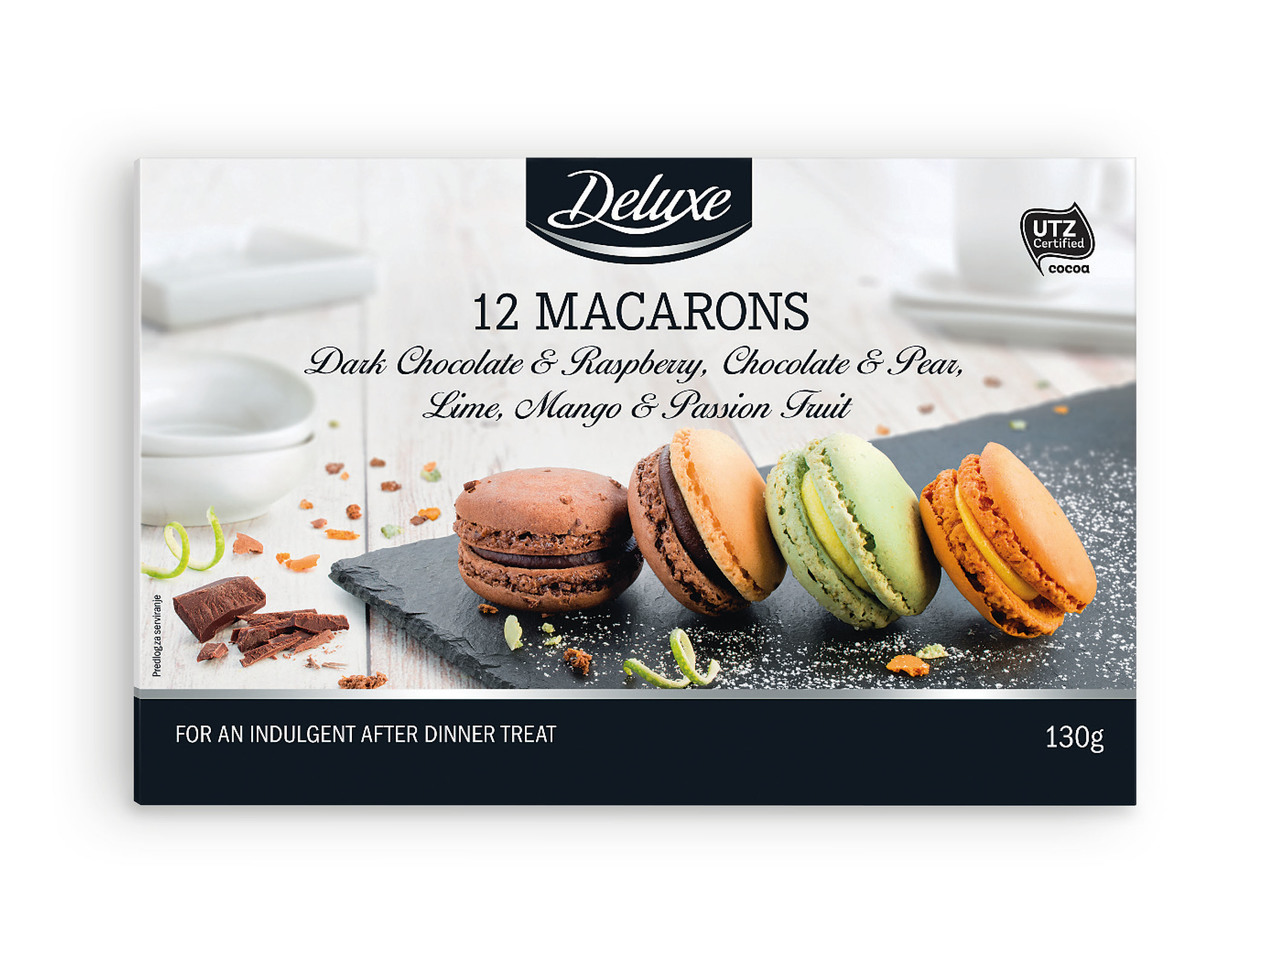 DELUXE(R) Macarons